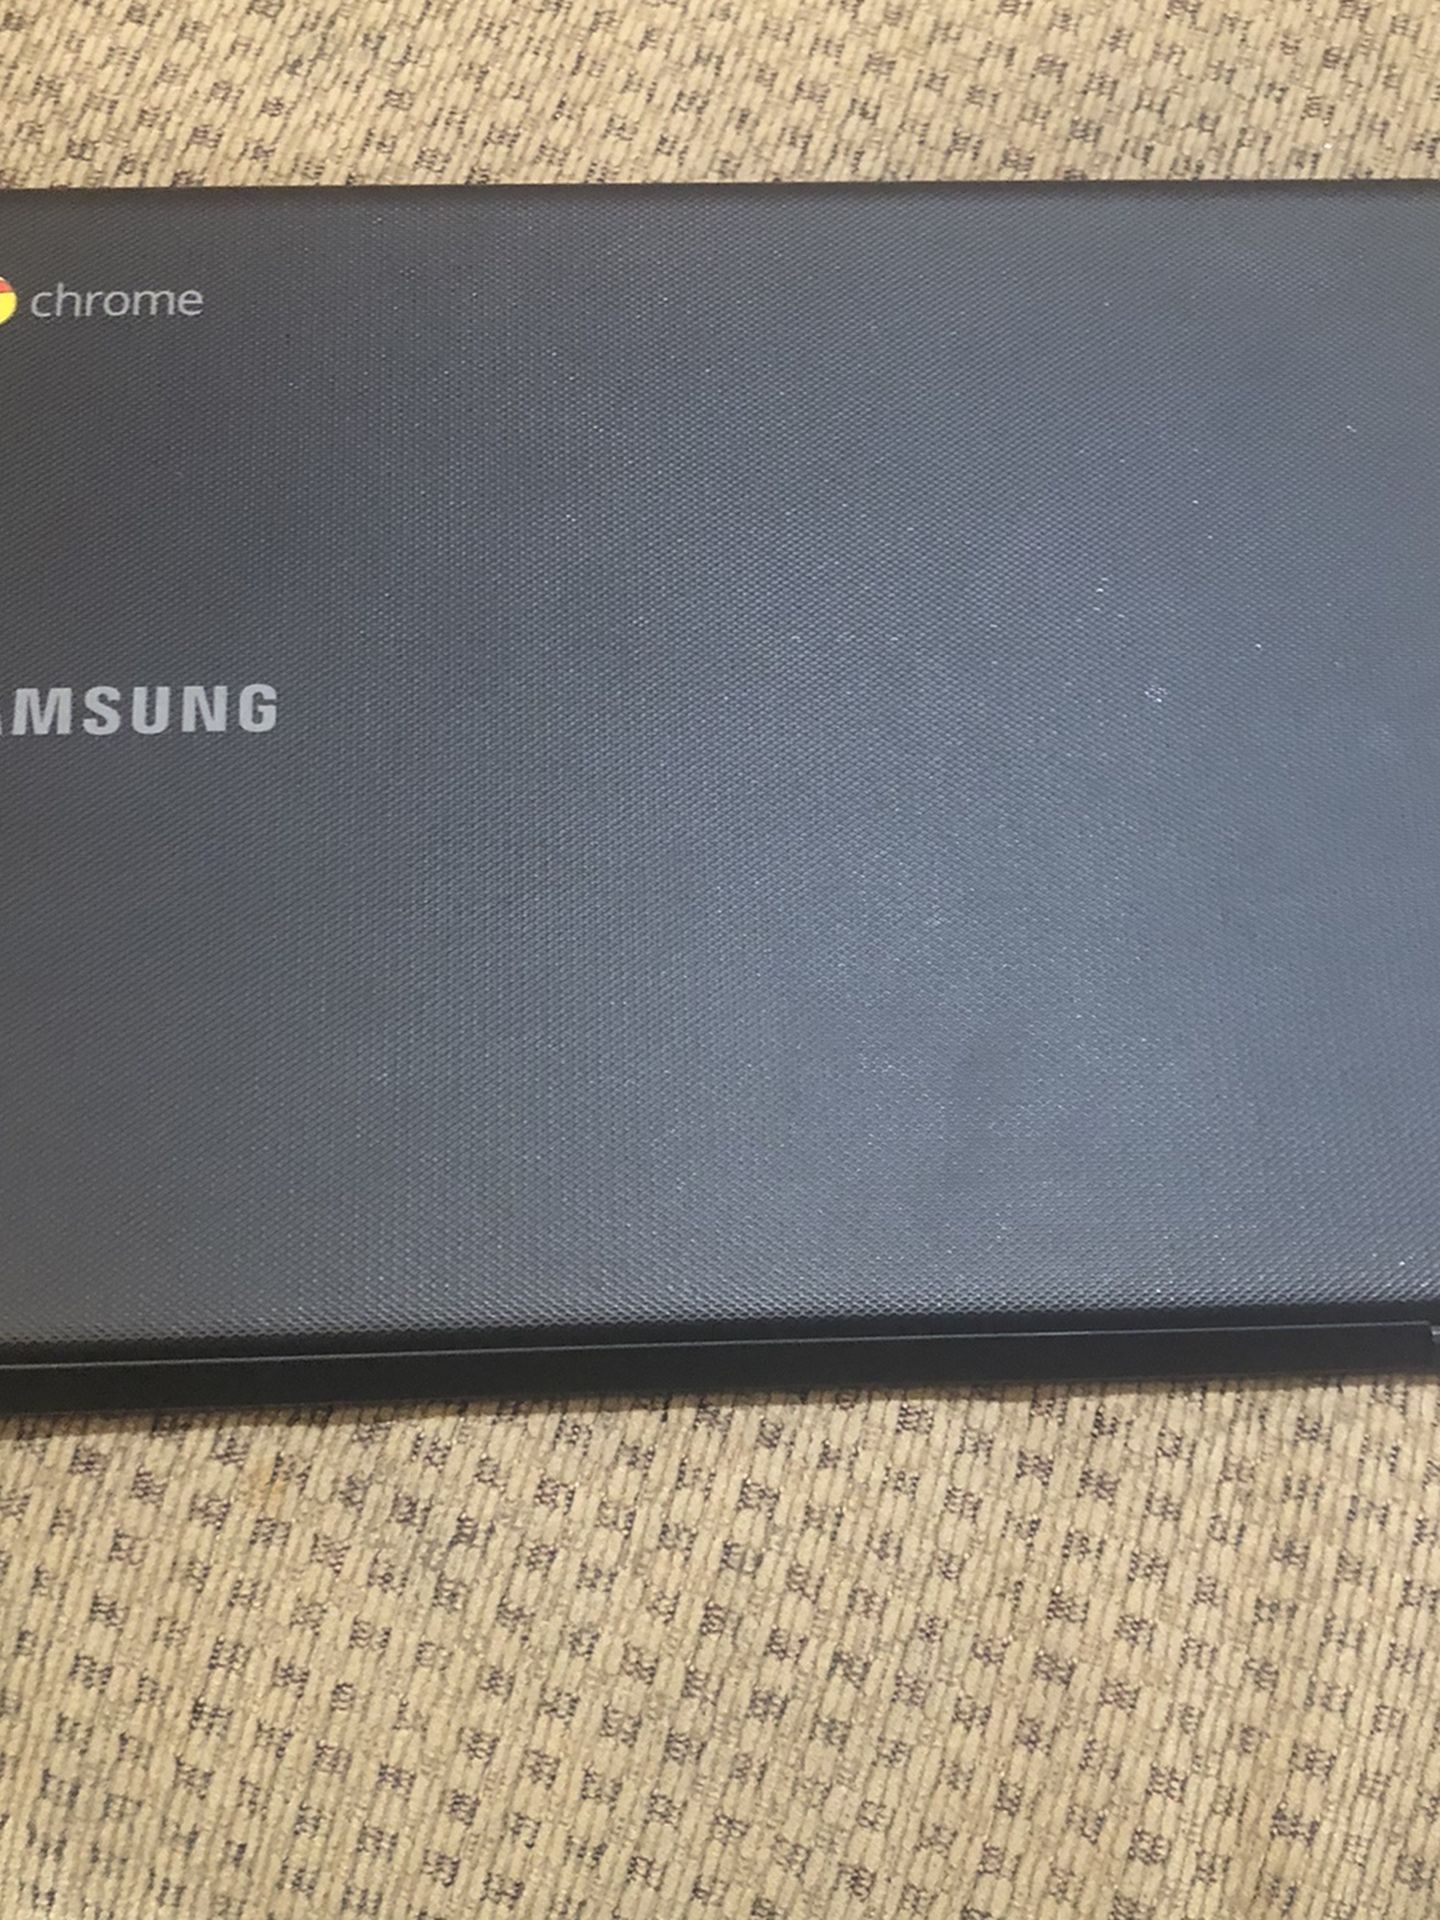 Samsung Chrome book